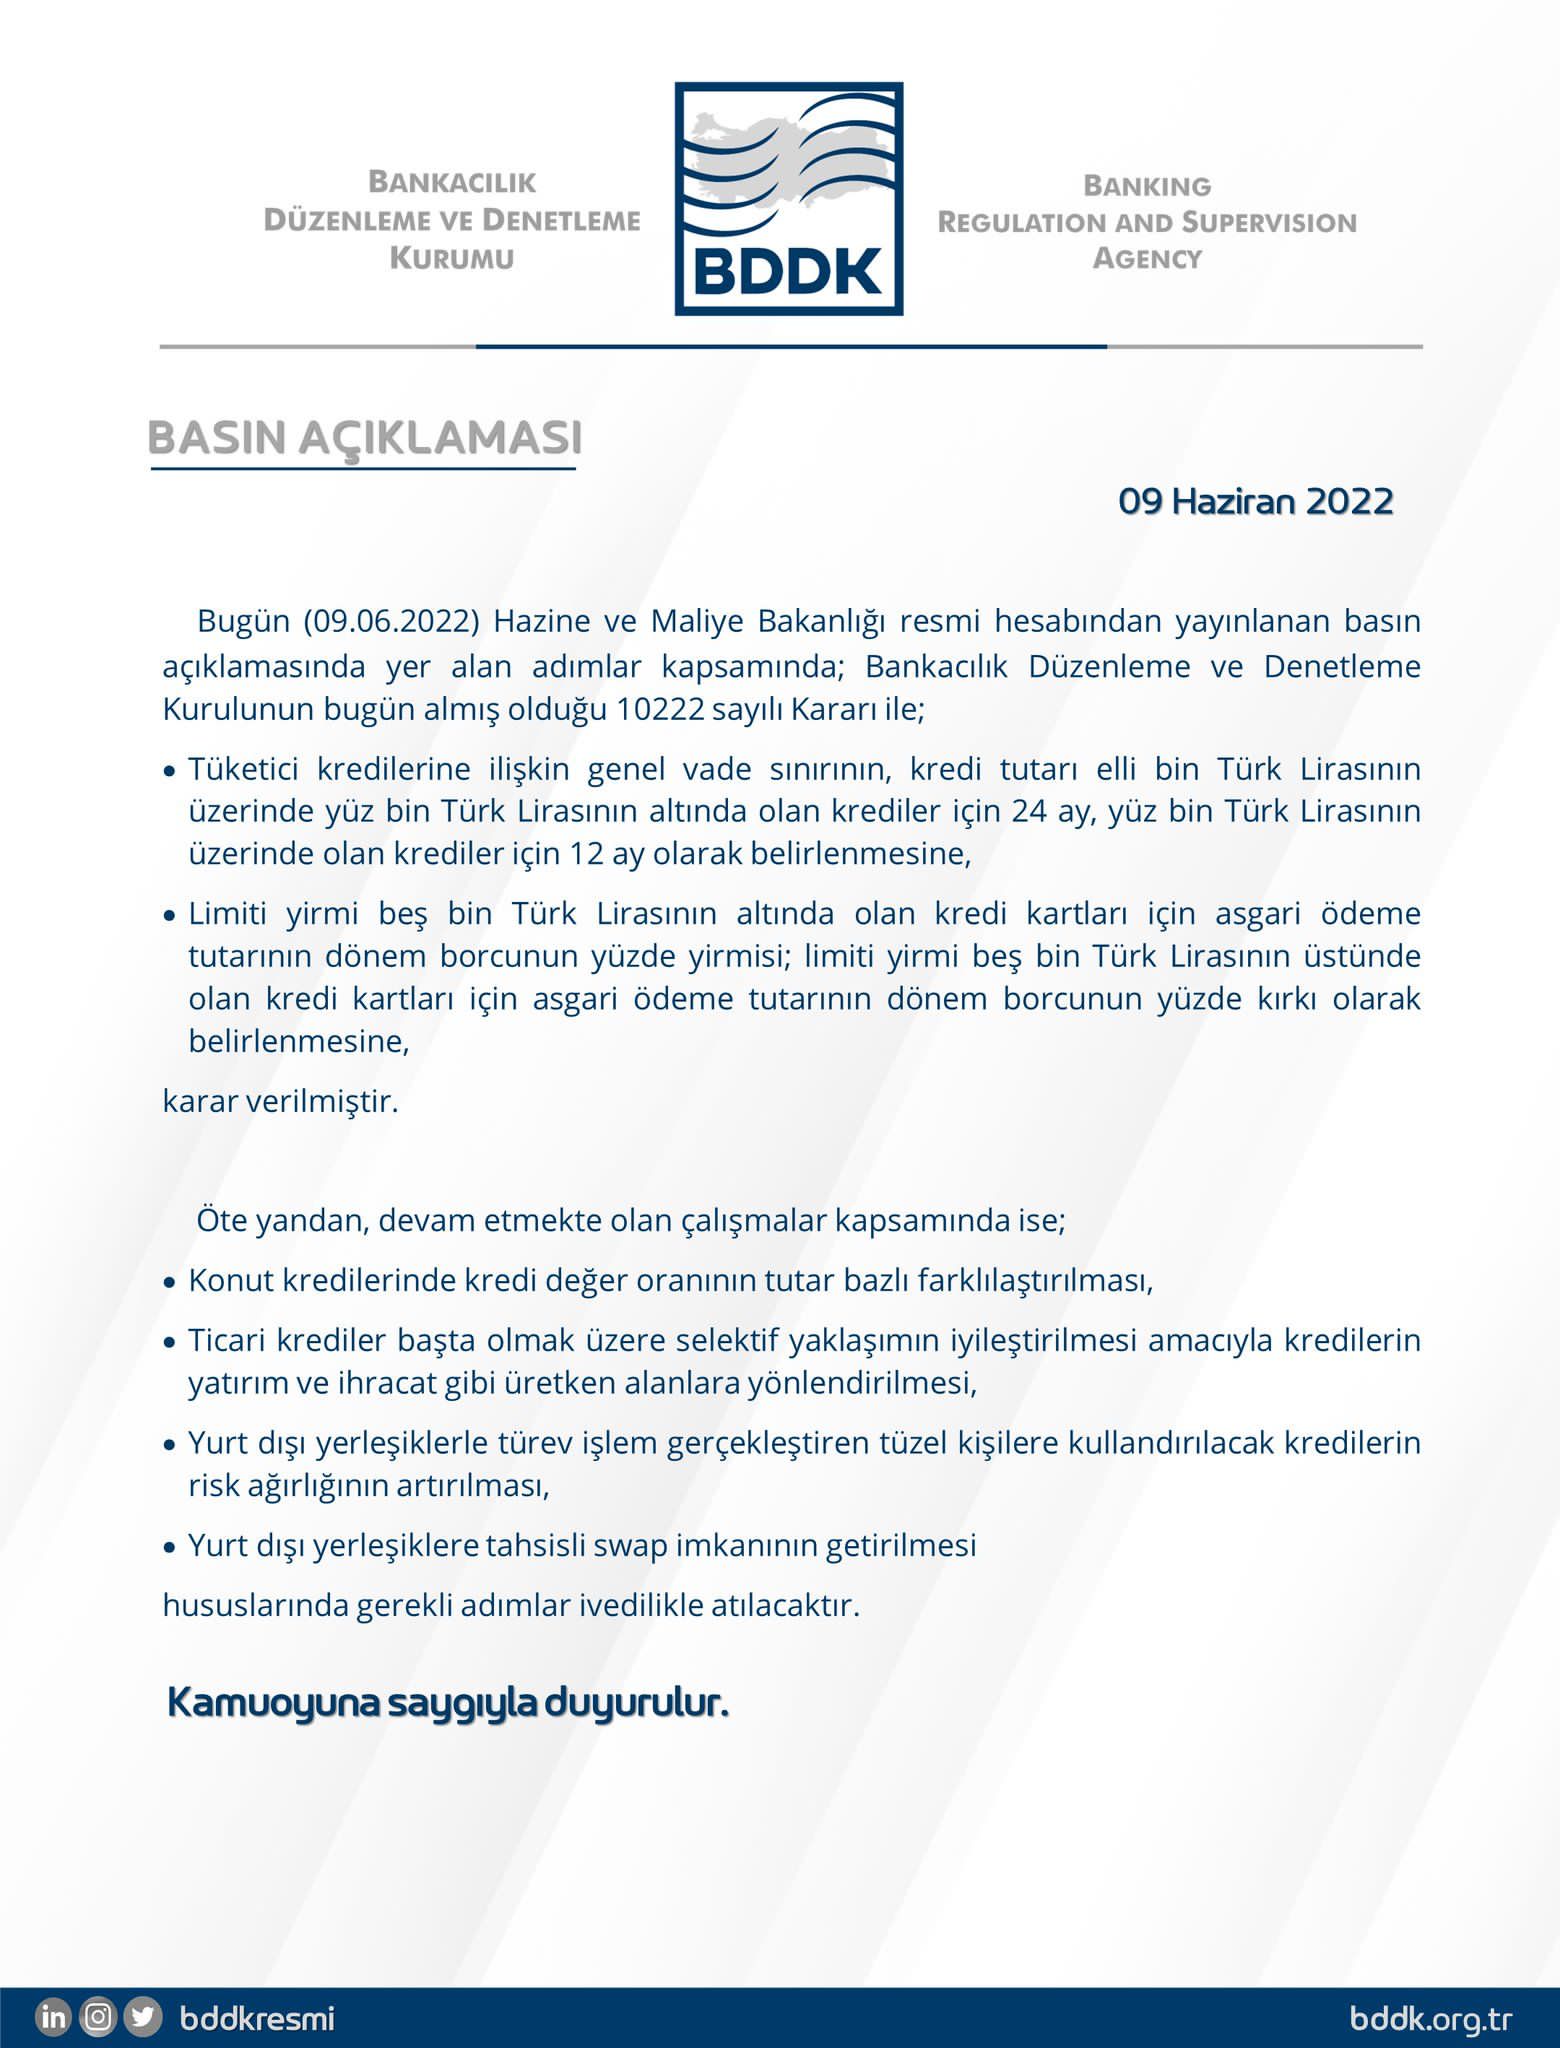 BDDK'nın yeni ekonomi paketine ilişkin açıklamaları